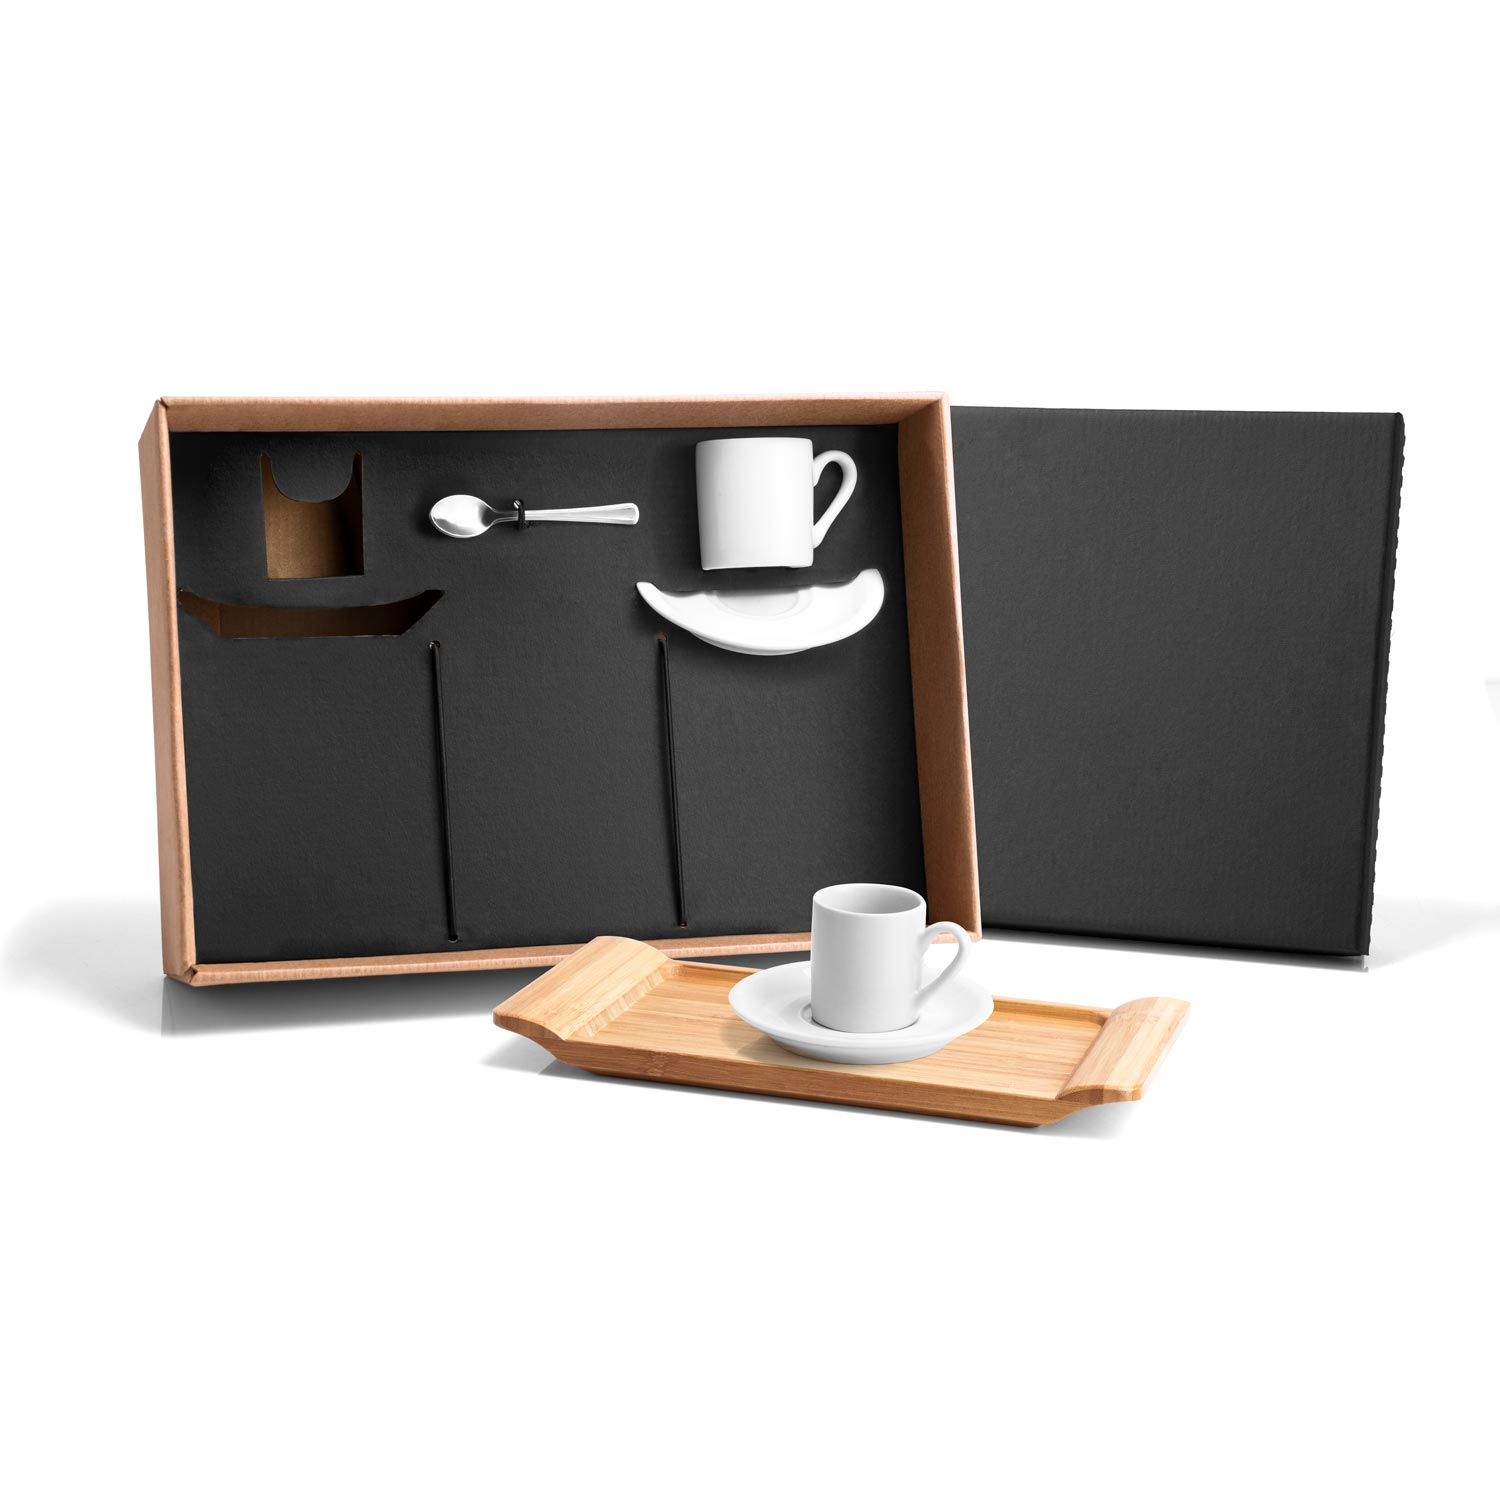 RD 7090103-Kit personalizado para cafézinho com bandeja e 7 peças | Tramandai-RS